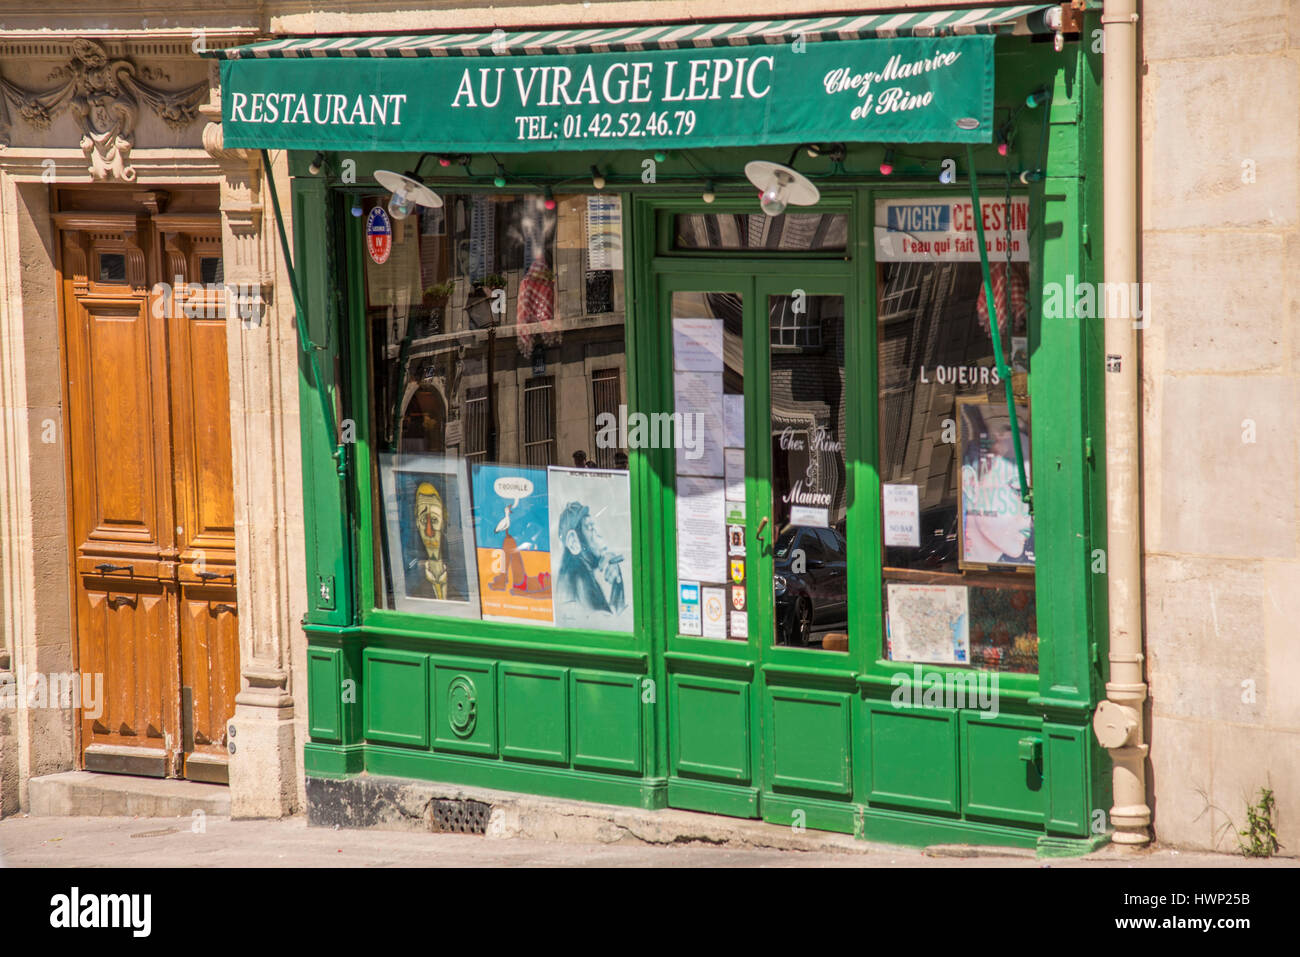 Il dipinto di verde anteriore dell'Au Virage Lepic un ristorante che serve tradizionali cibi francesi si trova su Rue Lepic in Montmartre, Parigi Francia. Foto Stock